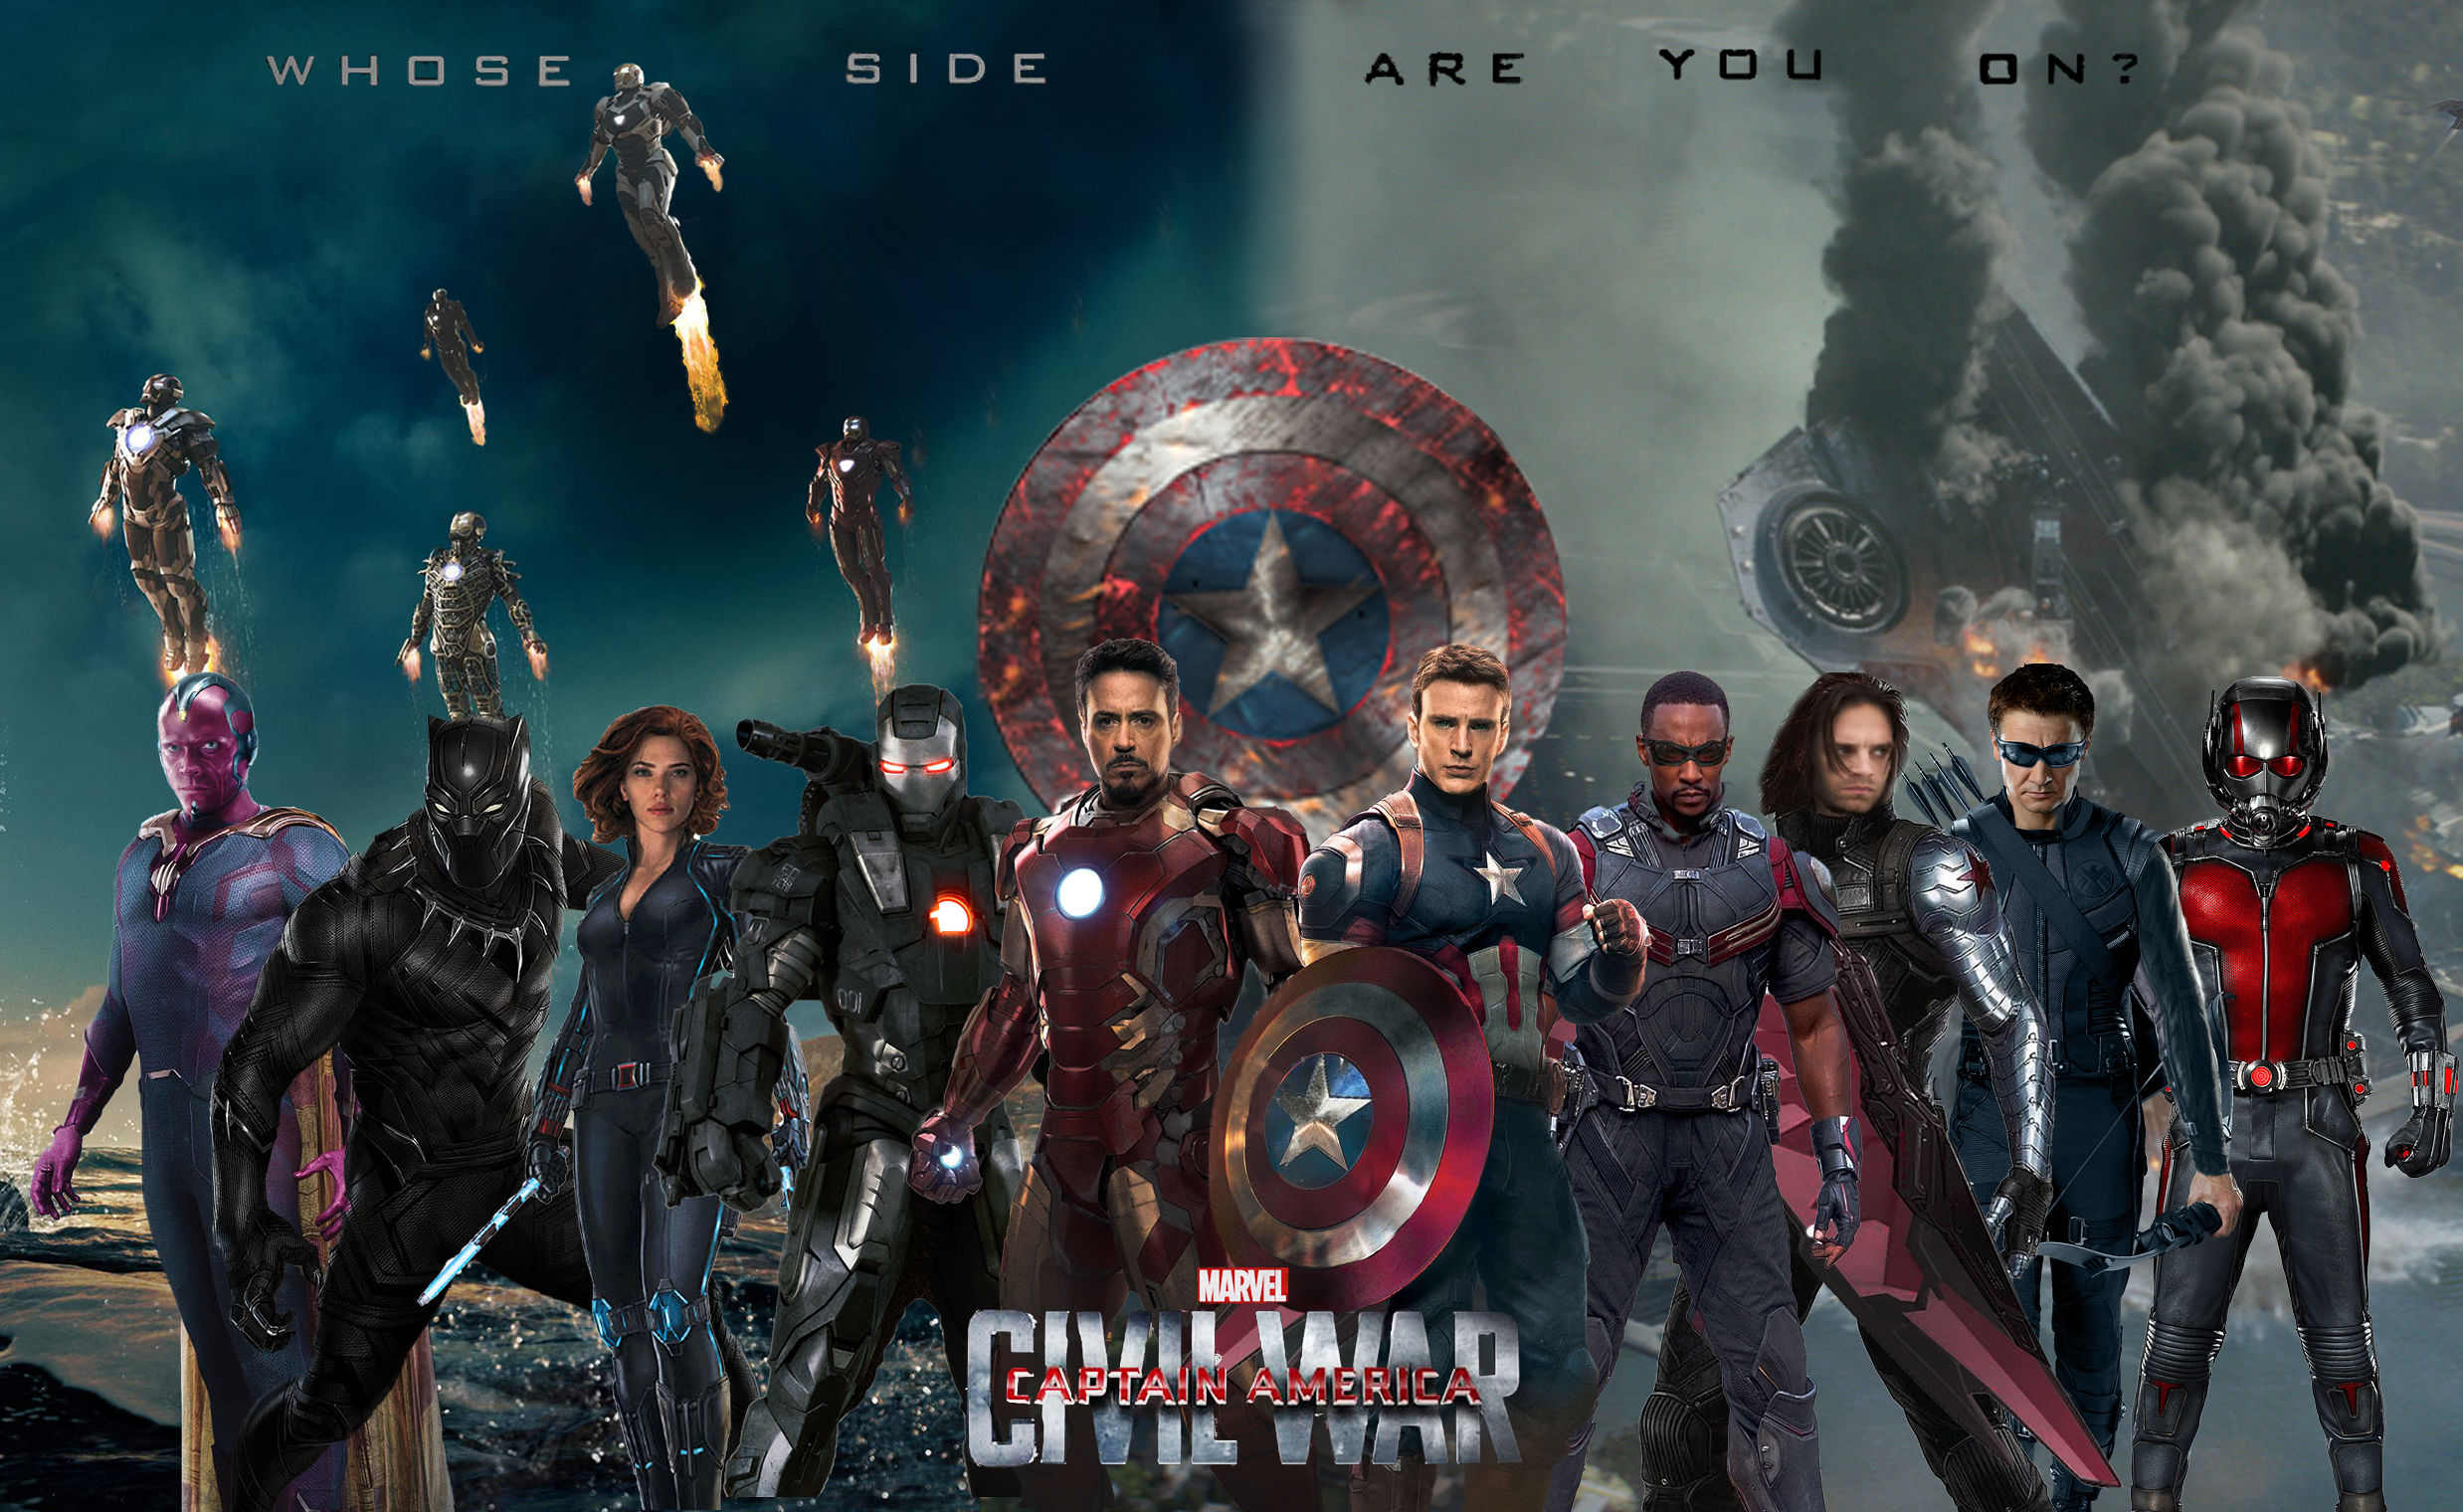 Captain America Civil War Wallpaper More Moviepilot